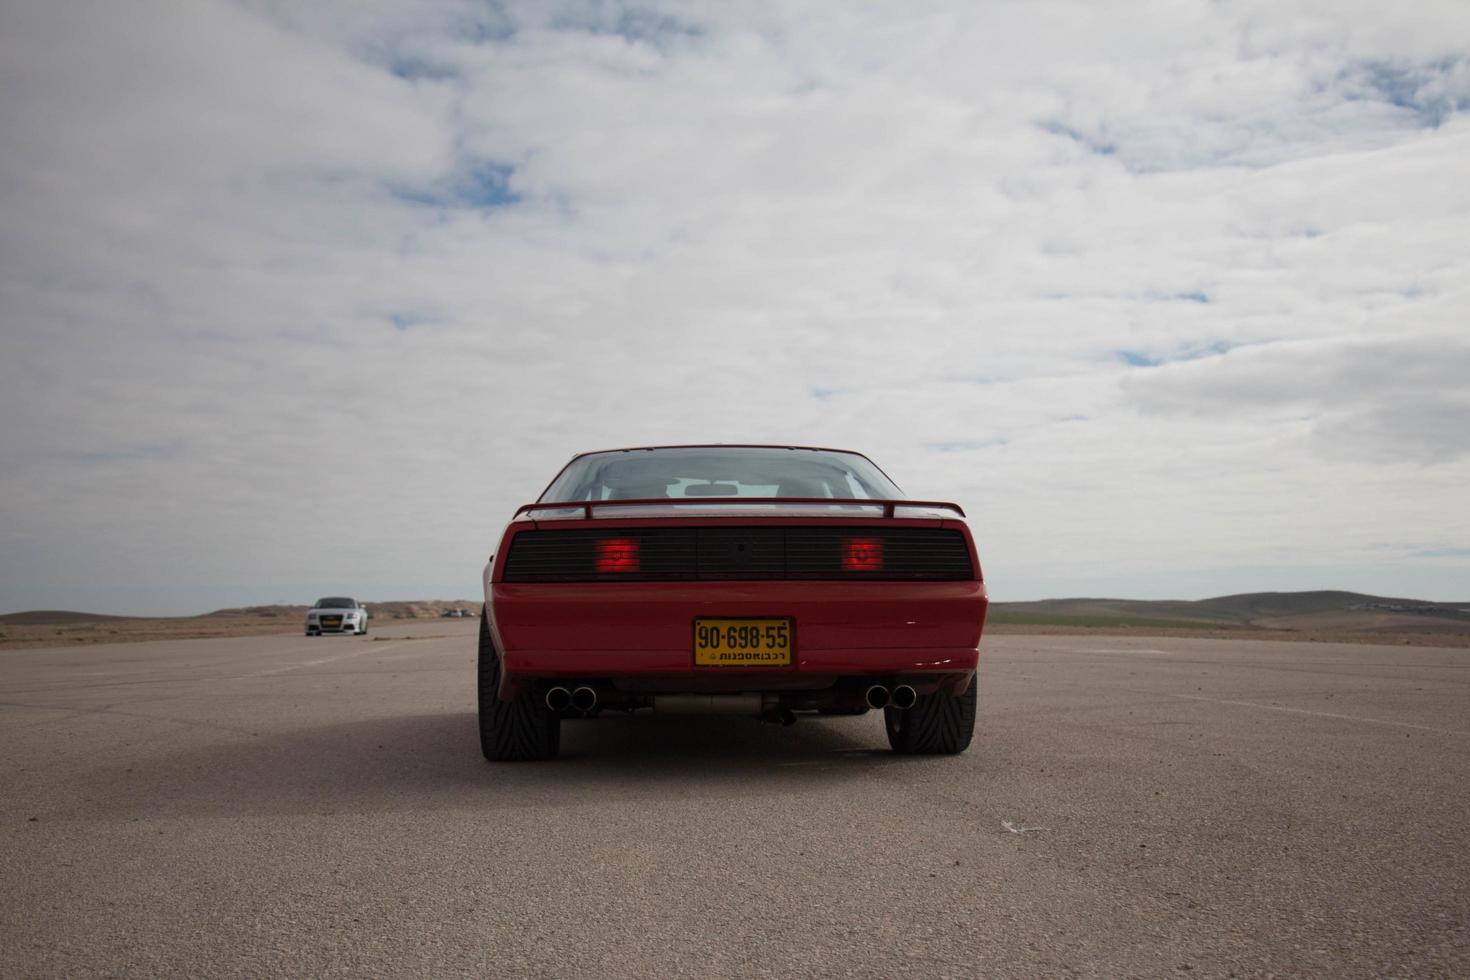 voitures sur la piste de course et sur les routes du désert photo